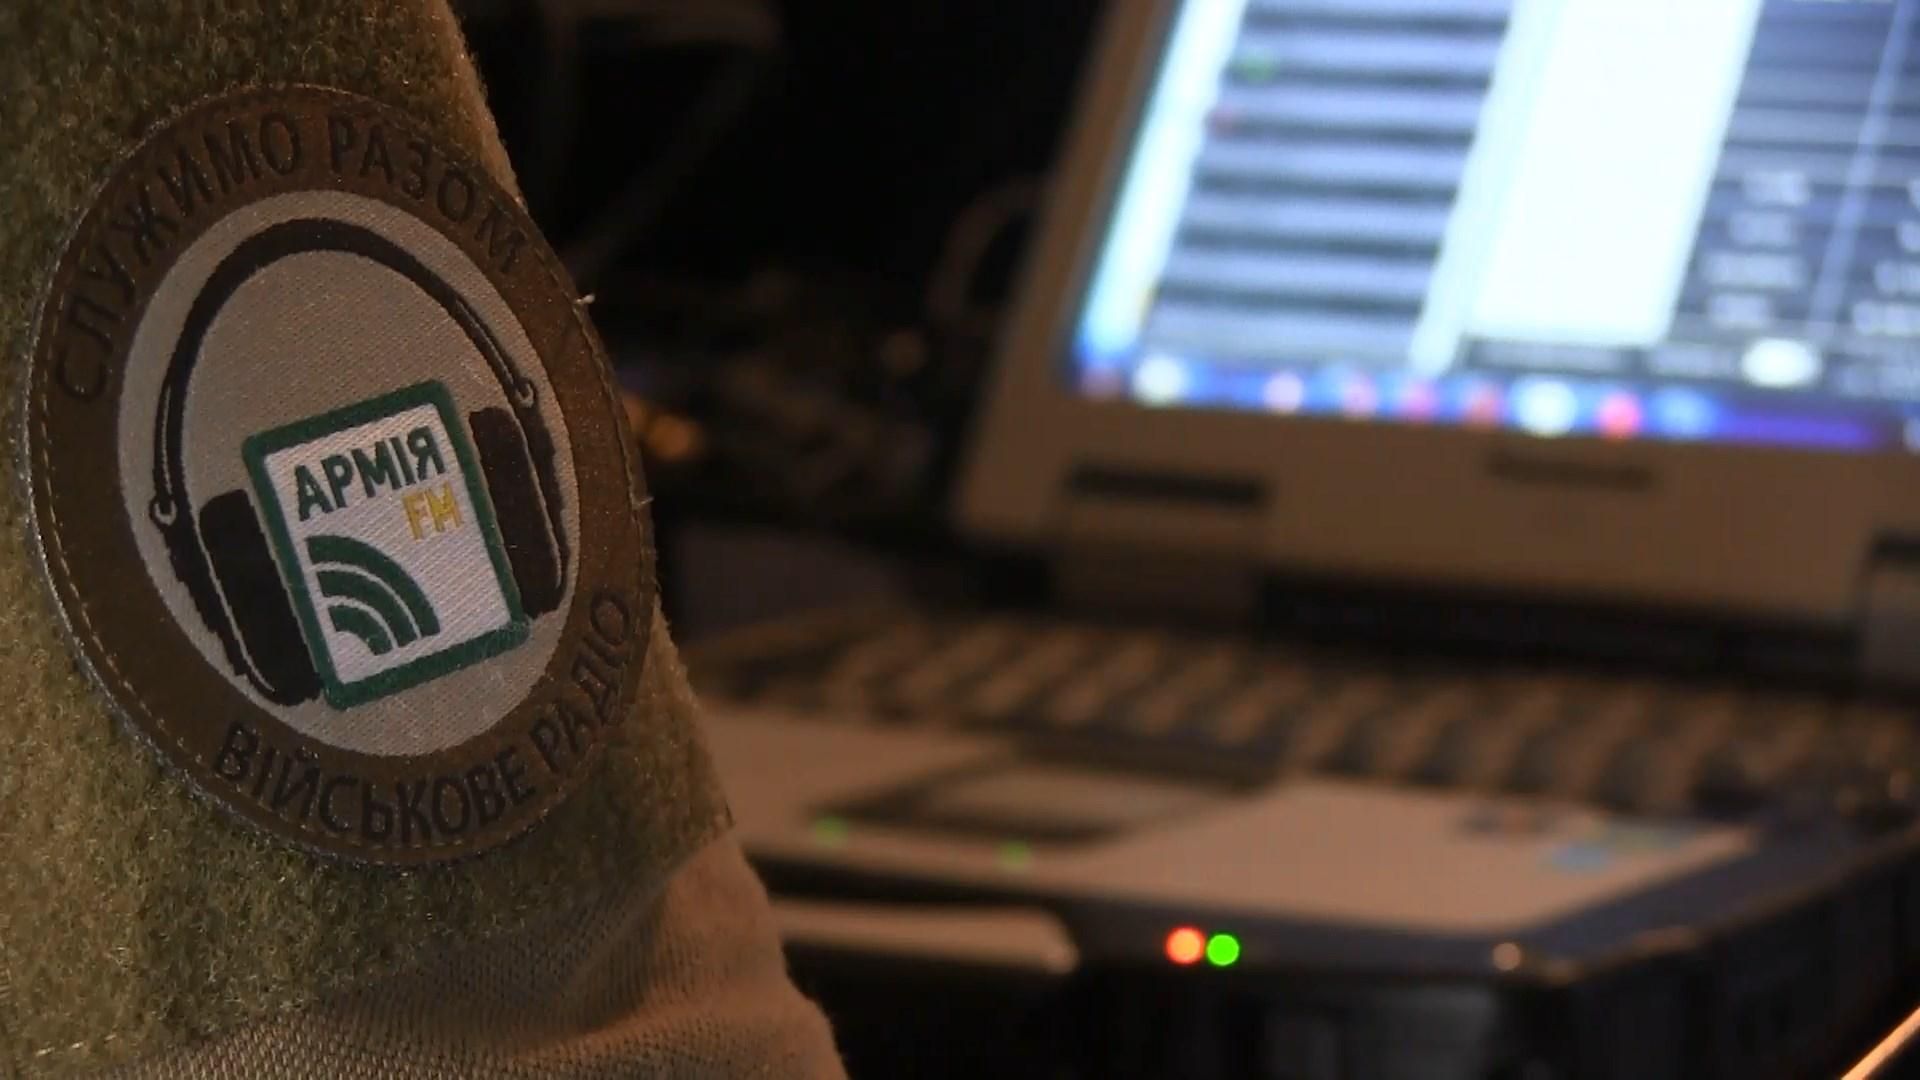 На страже информационной безопасности: как на фронте работает военное радио "Армия fm"